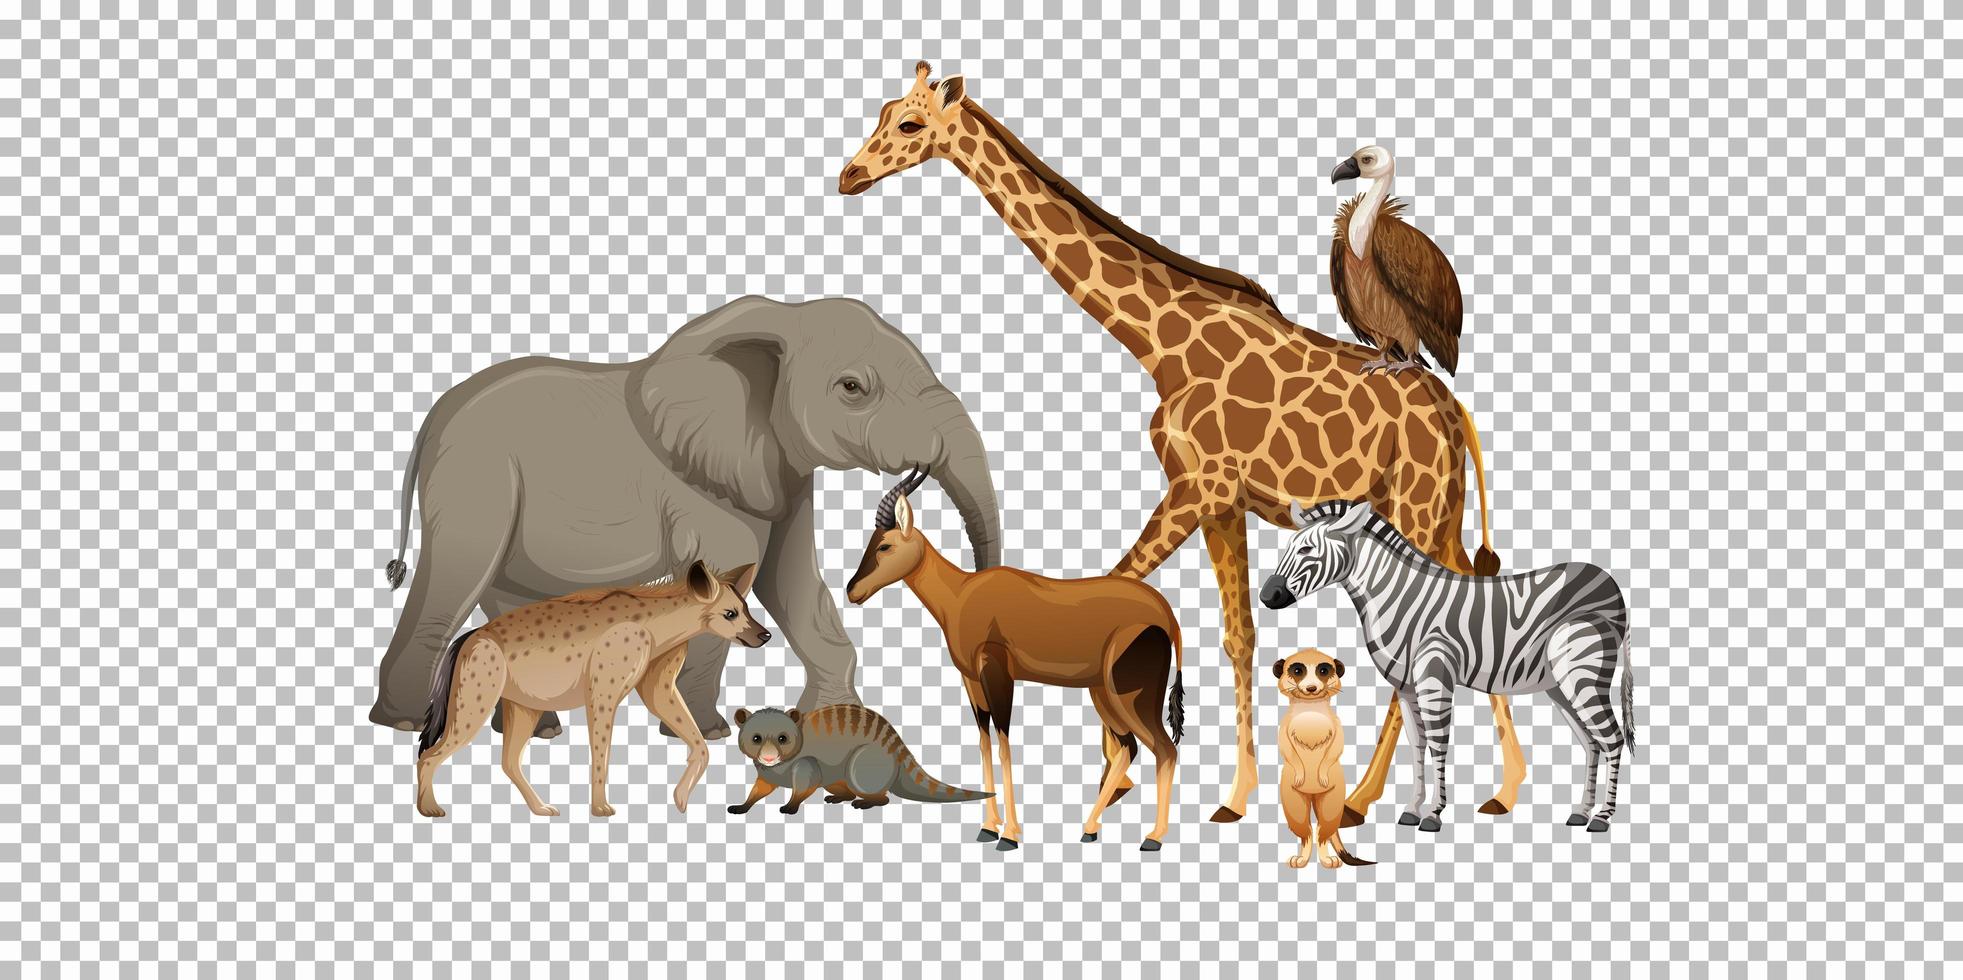 Gruppe des wilden afrikanischen Tieres auf transparentem Hintergrund vektor